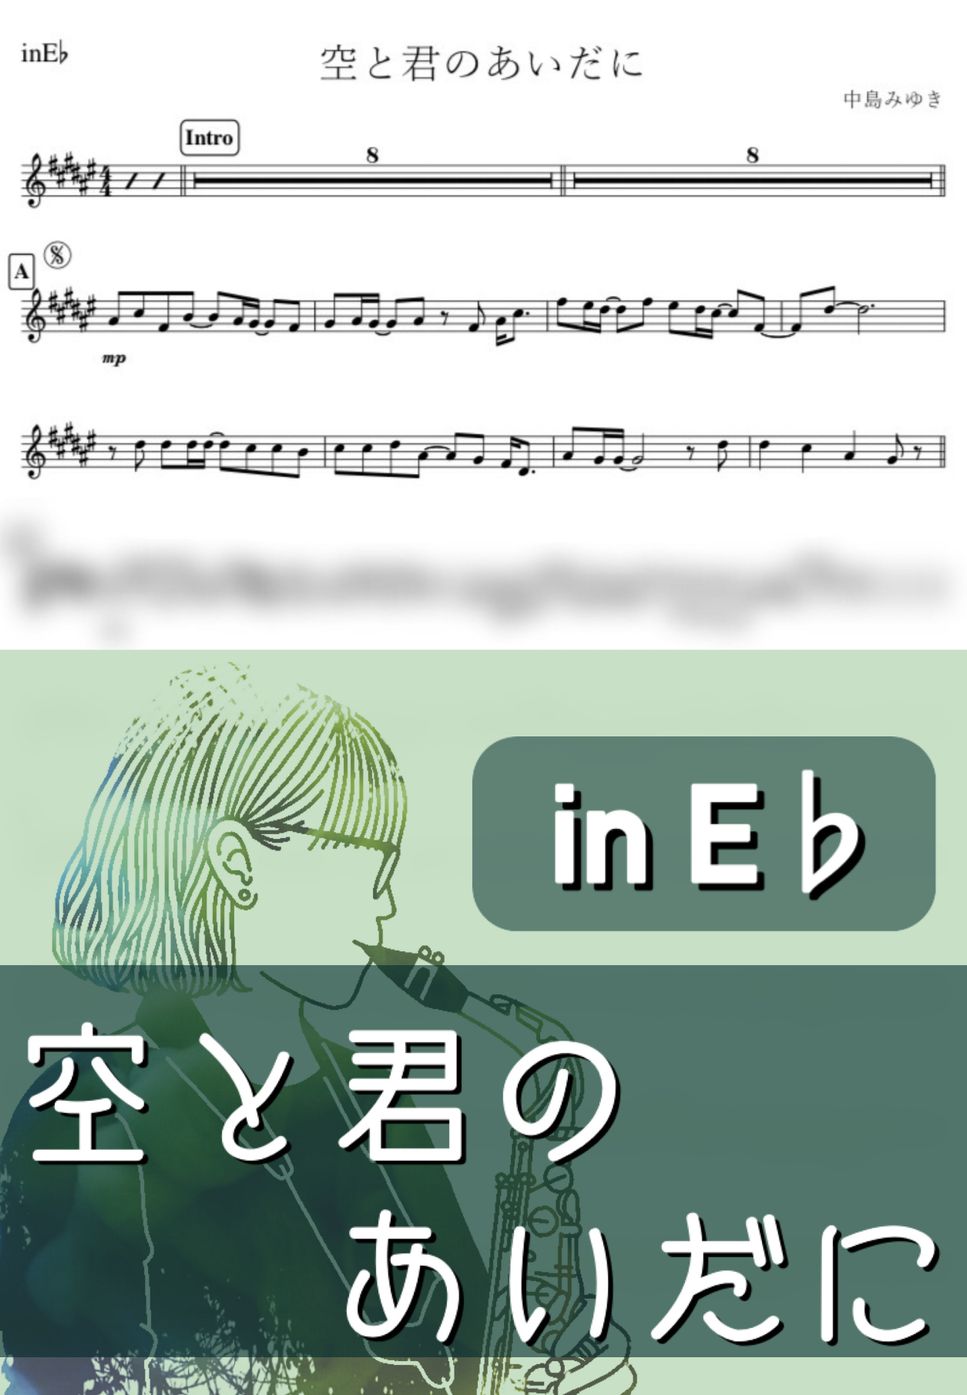 中島みゆき - 空と君のあいだに (E♭) by kanamusic